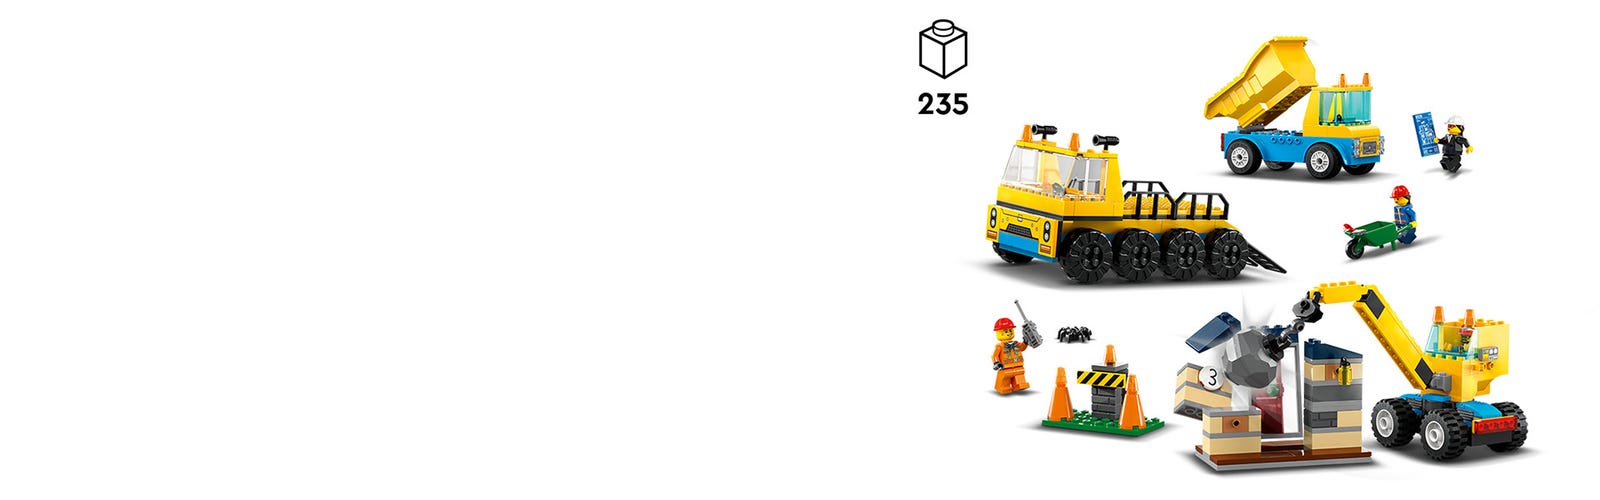 Camions de chantier et grue de démolition Lego City 60391 - La